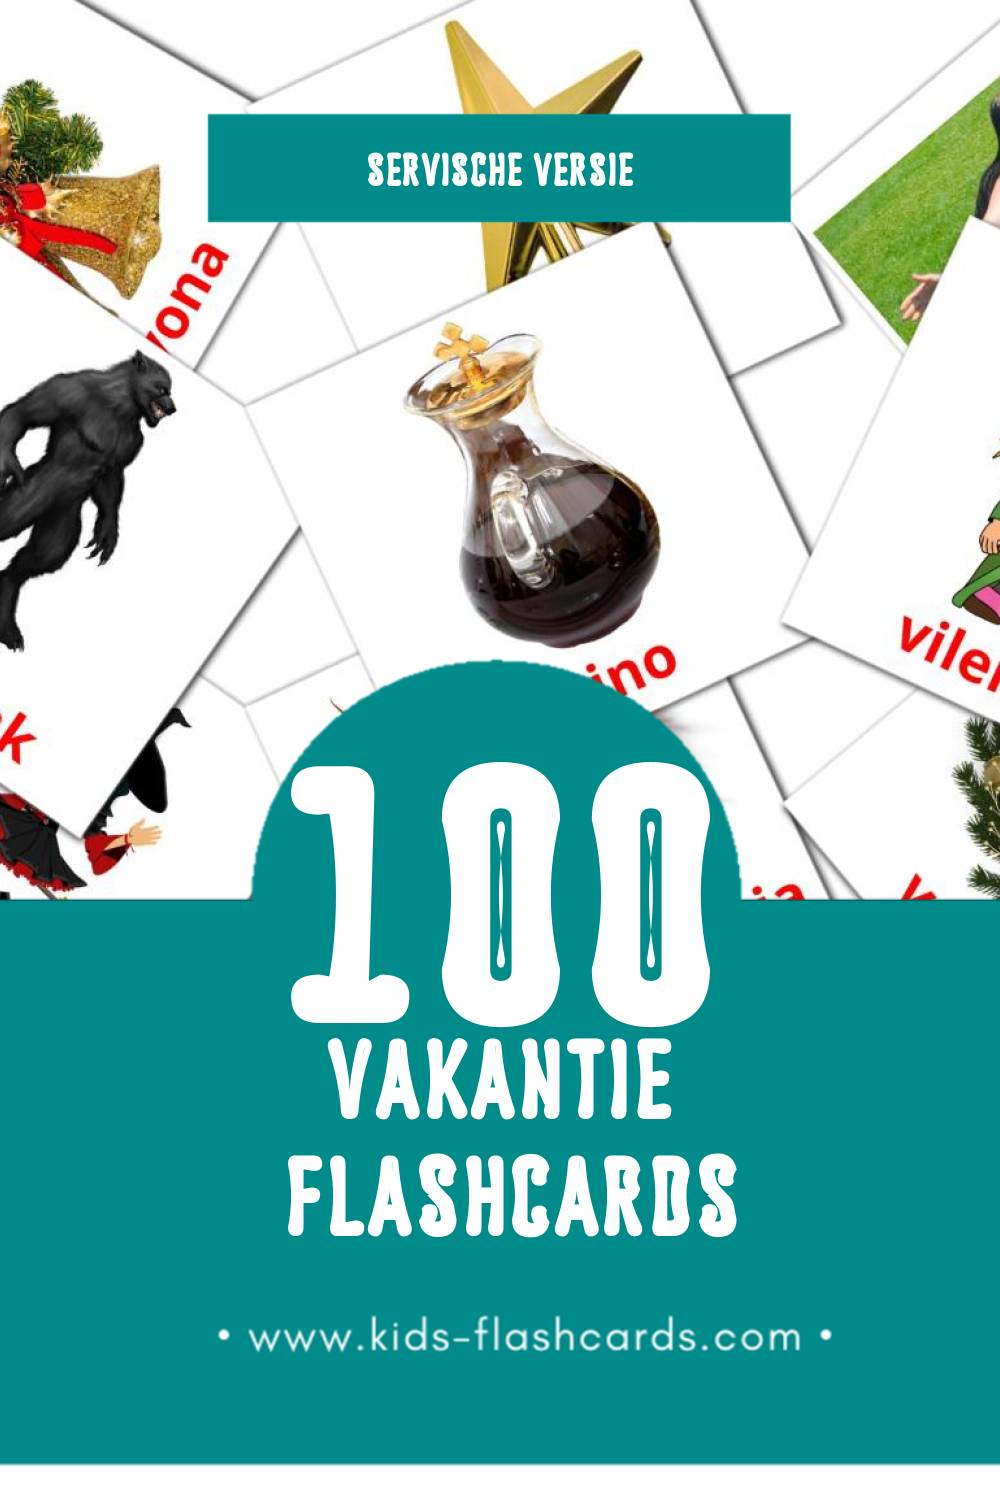 Visuele Praznici Flashcards voor Kleuters (100 kaarten in het Servisch)